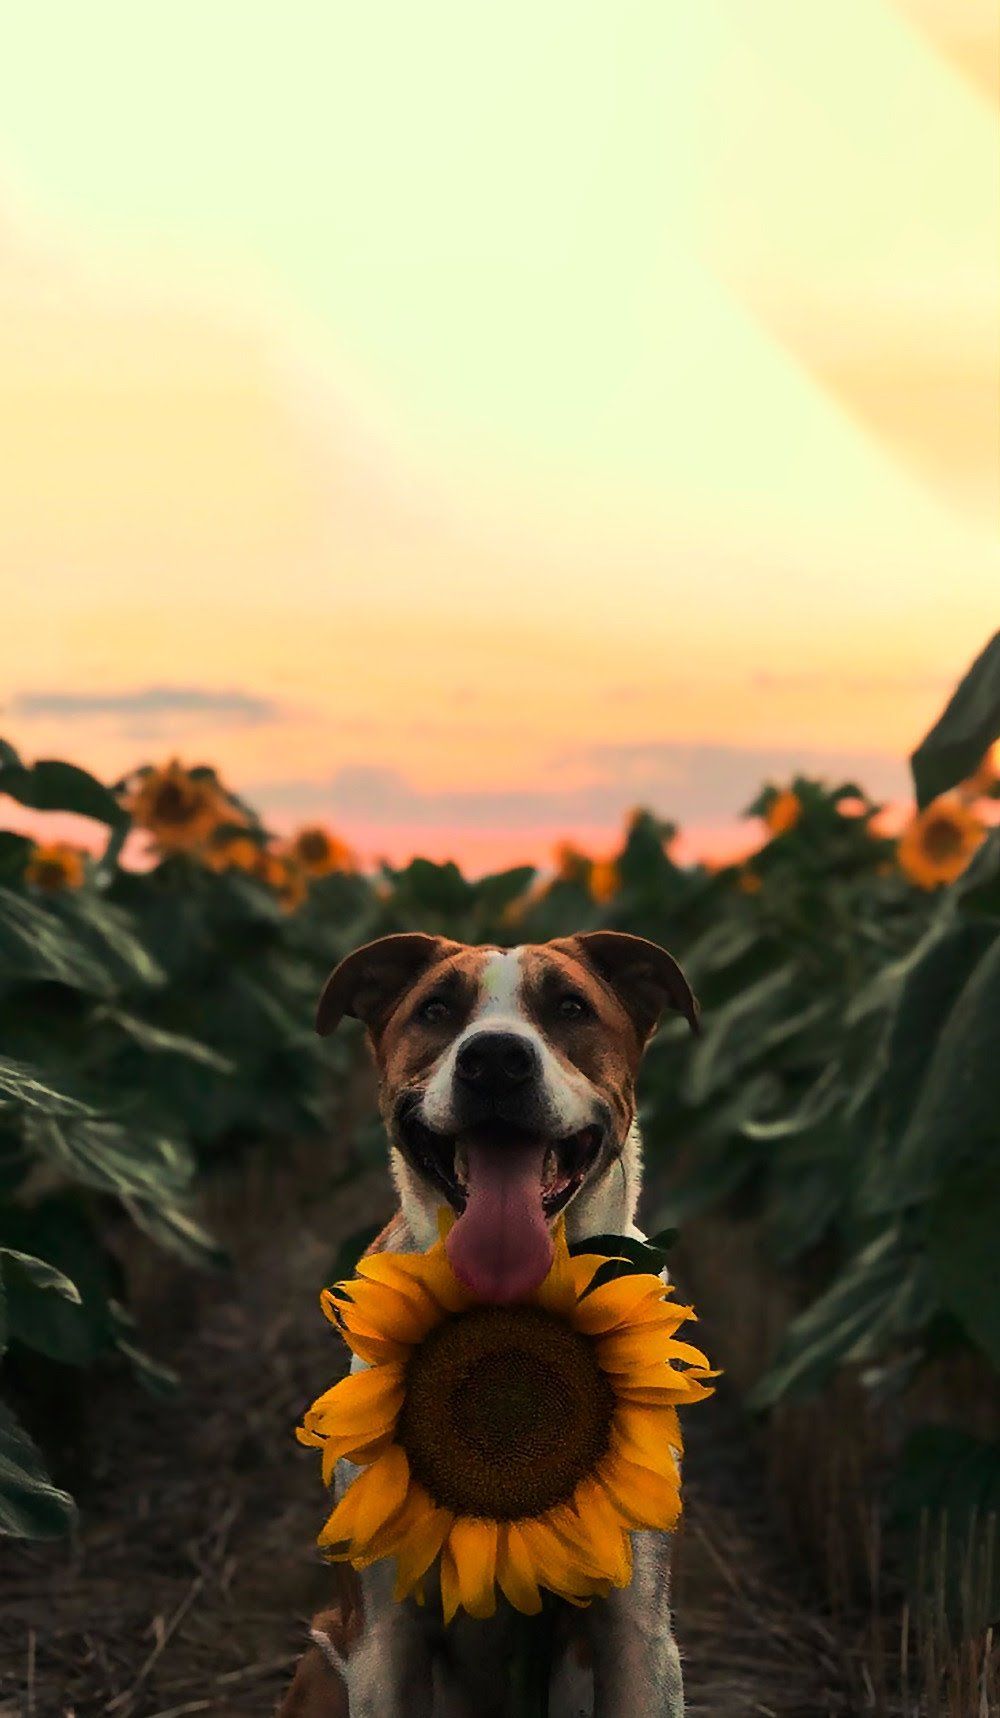 Dog Aesthetic Sunflower Wallpaper